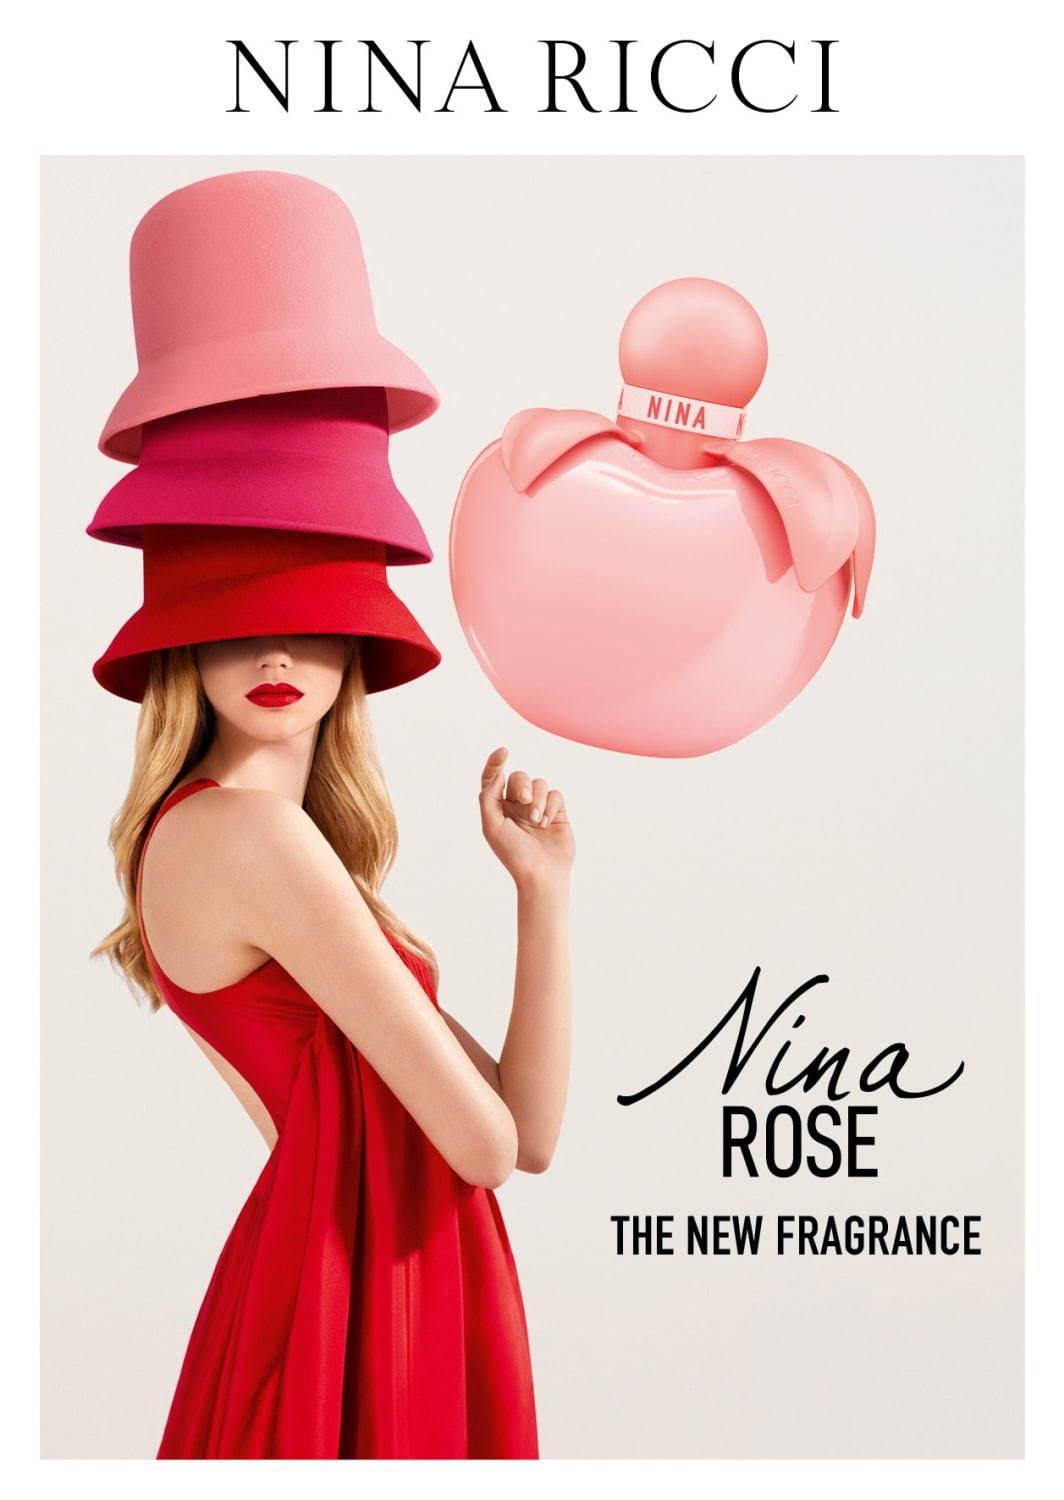 ニナ リッチ新香水“デリシャス”フローラルの香り「ニナ ローズ」バブルガムピンクのボトル コピー